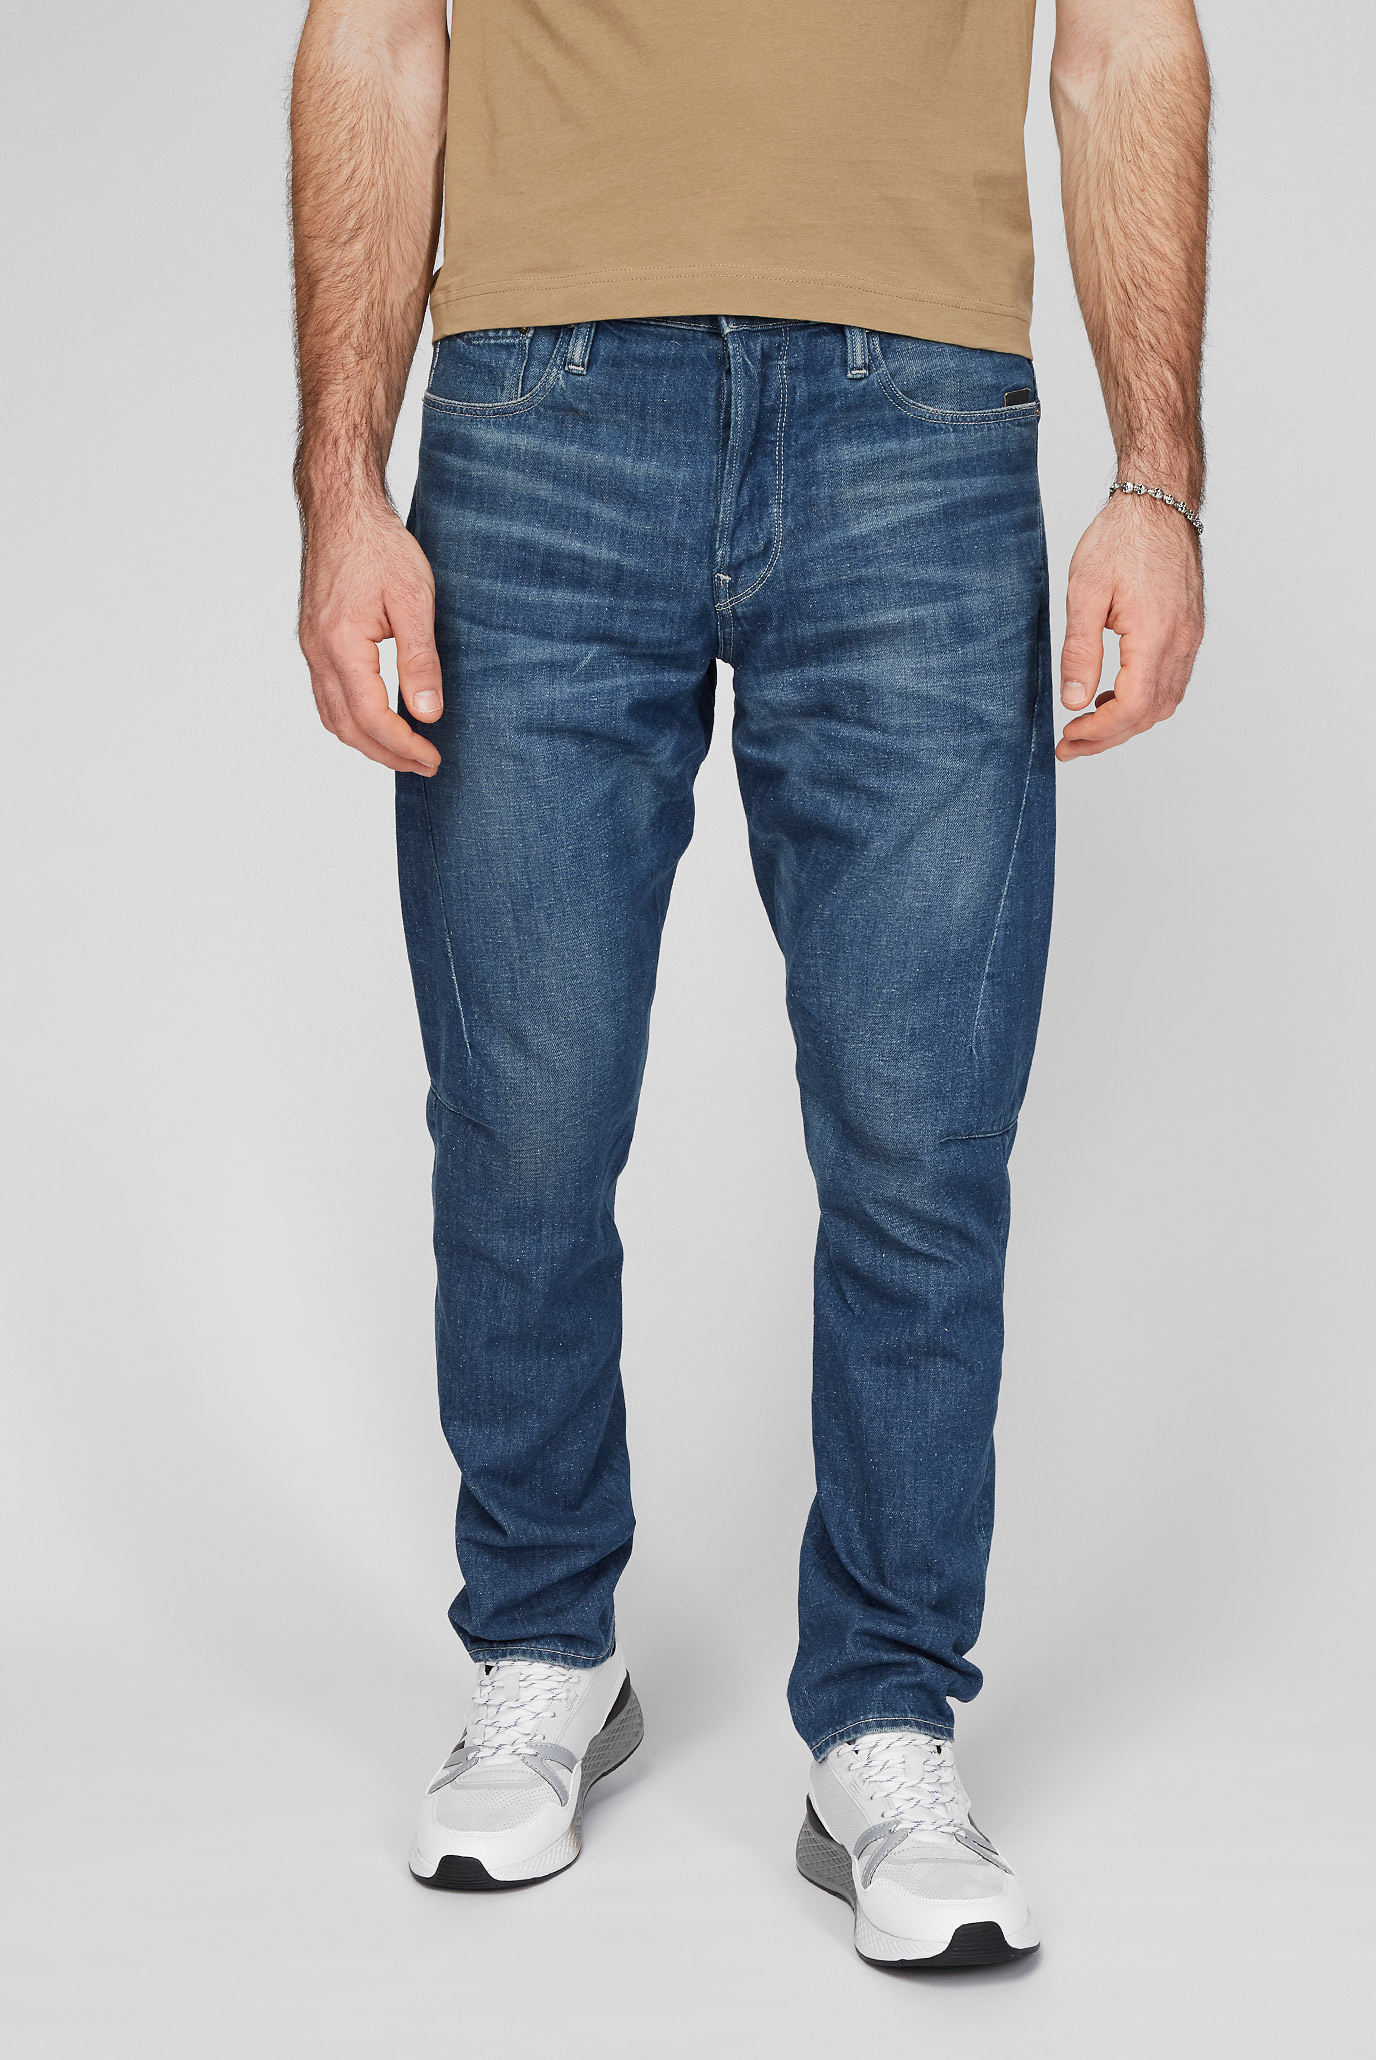 Мужские синие джинсы Scutar 3D 1